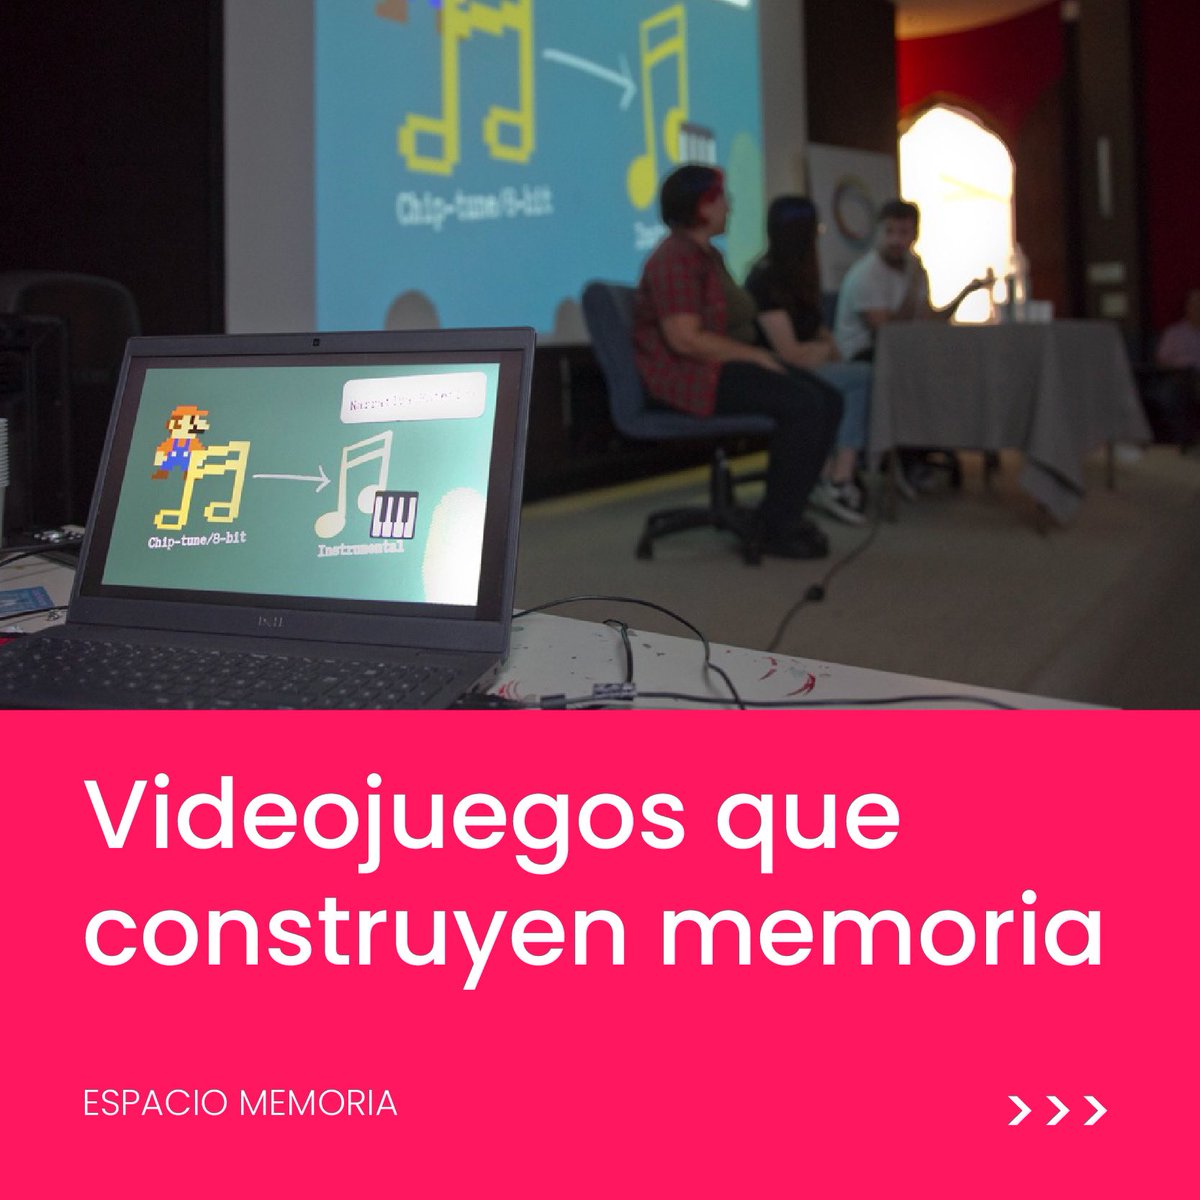 🎮 El Espacio Memoria fue sede por primera vez de dos JAM de videojuegos que tuvieron como eje la reflexión sobre la historia reciente de la Argentina. 👉 La iniciativa dejó 11 propuestas de juegos vinculados con la memoria y los derechos humanos. ✍️ bit.ly/4dduVCT